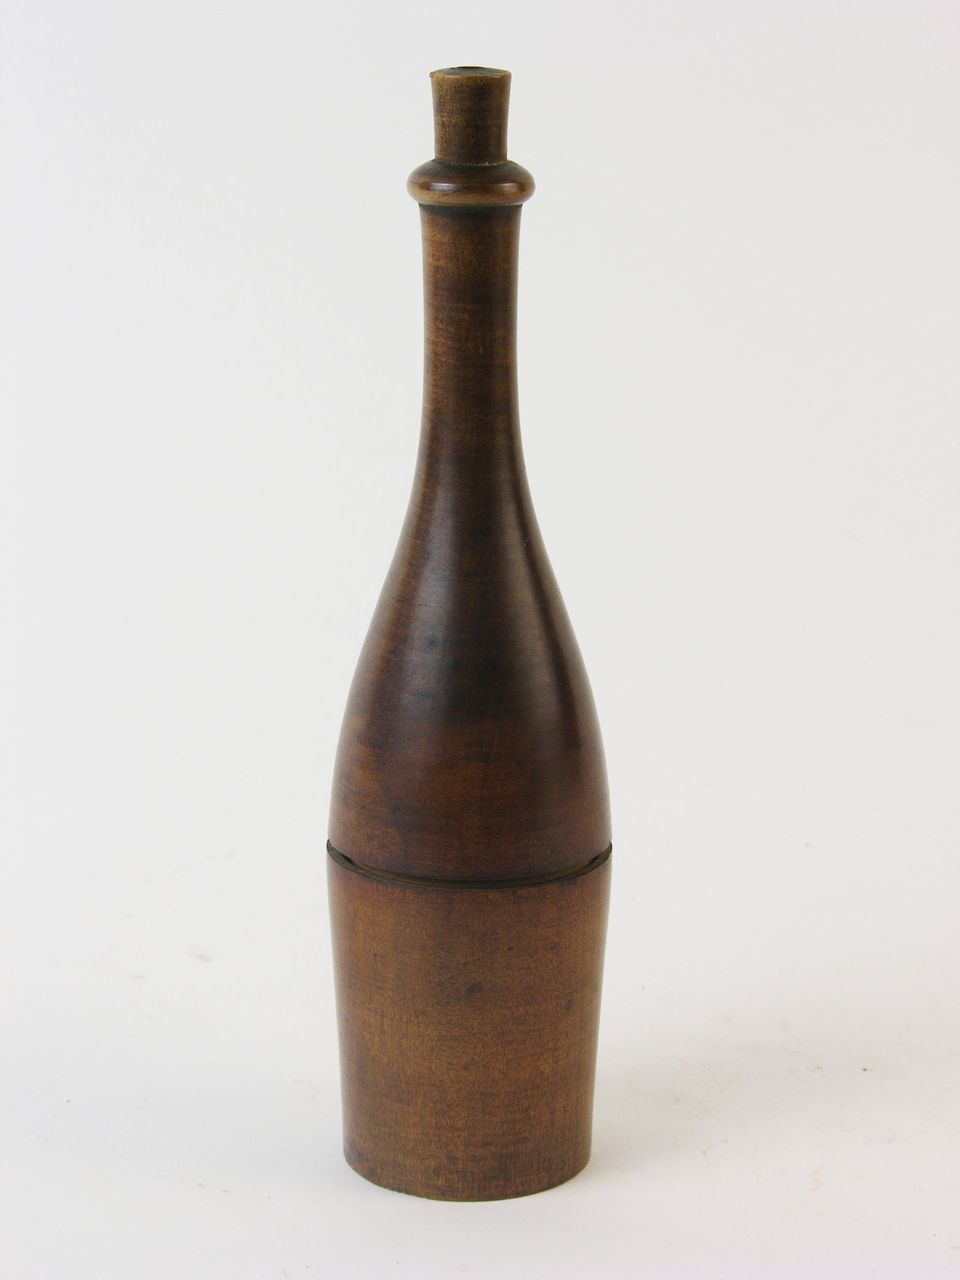 Mostwaage mit Futteral in Form einer zugekorkten Weinflasche (Historisches Museum der Pfalz, Speyer CC BY)